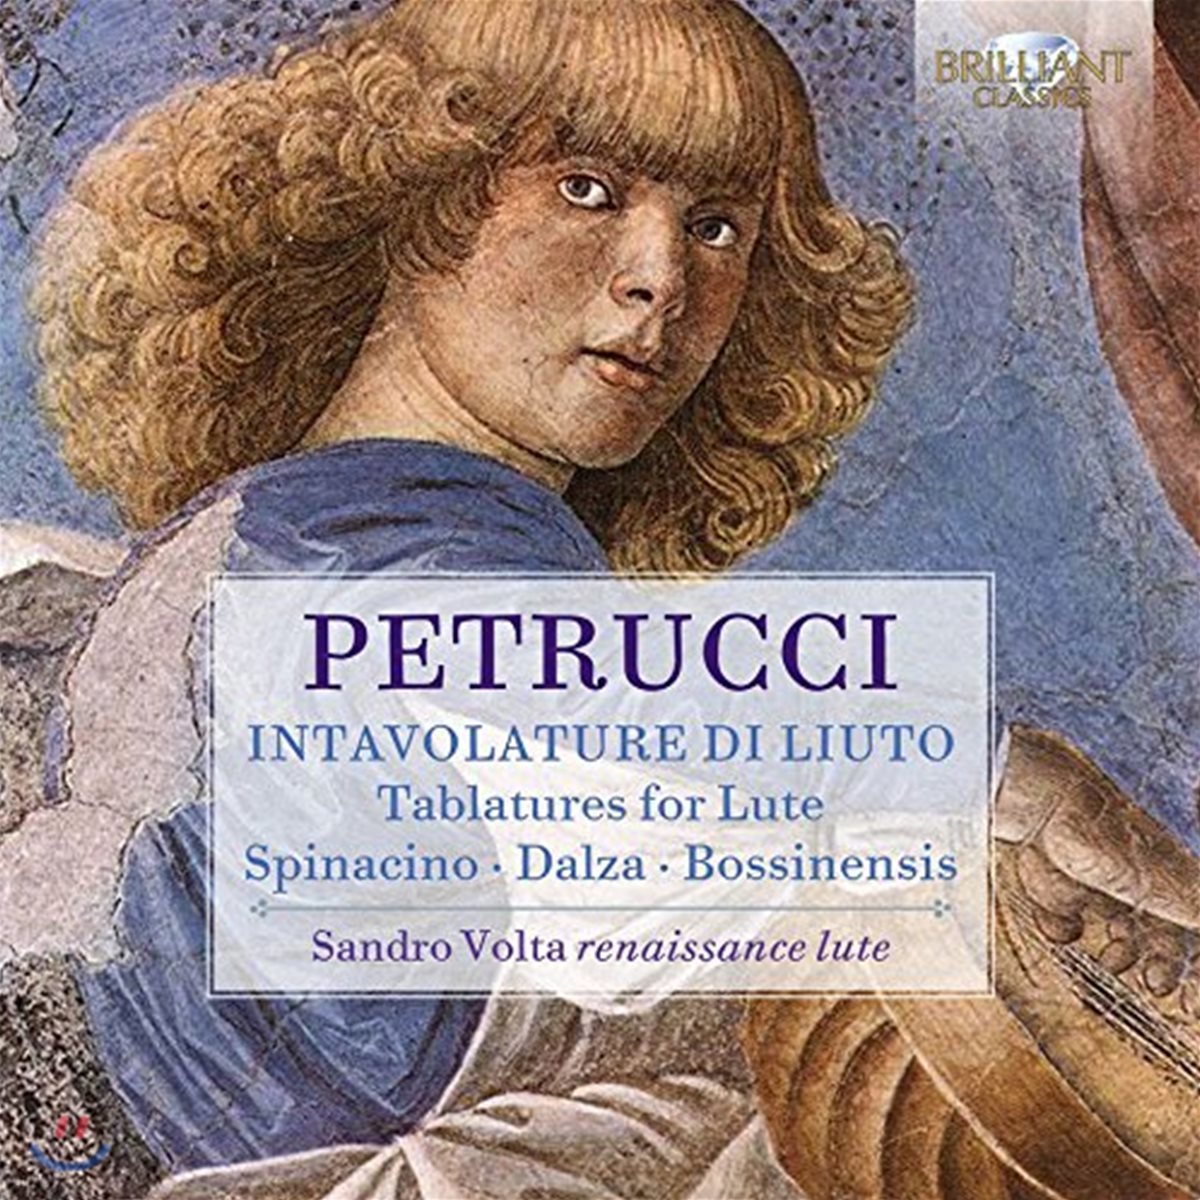 Sandro Volta 페트루치의 인타볼라튜어 디 류토 [류트를 위한 태블러처] - 스피나치노 / 달자 / 보시넨시스 (Ottaviano Petrucci: Intavolature di Liuto - Spinacino / Dalza / Bossinensis)